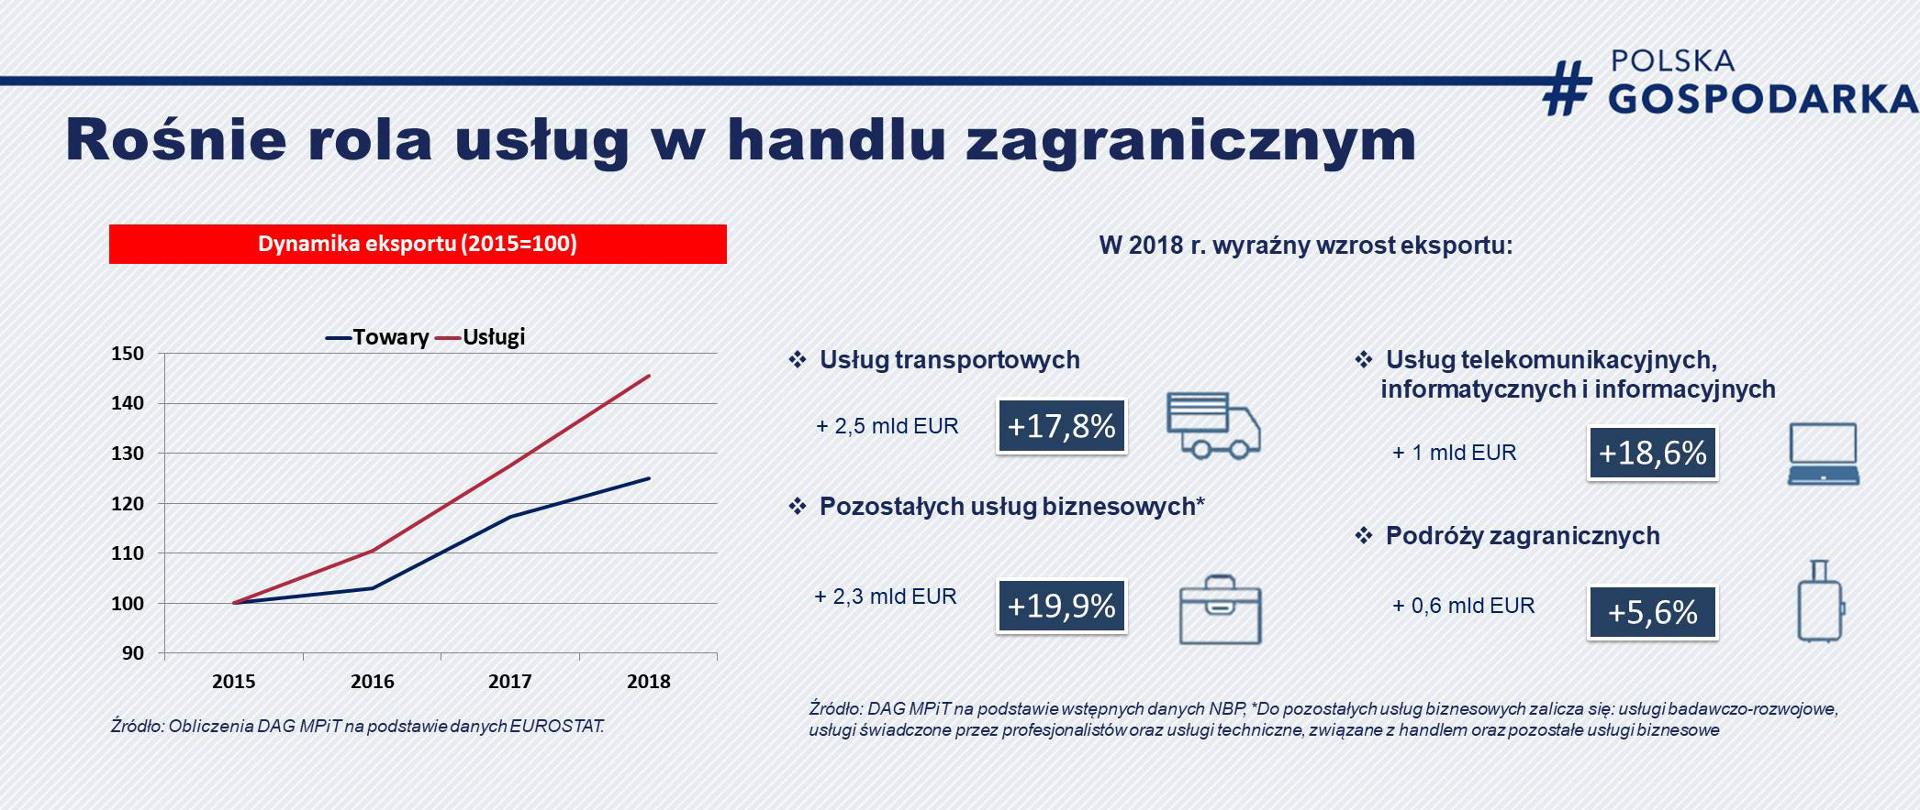 grafika przedstawia wykres, pokazujący, że w latach 2015-2018 istotnie wzrósł polski eksport usług oraz że w 2018 roku nastąpił wyraźny wzrost eksportu usług transportowych, telekomunikacyjnych, podróży zagranicznych i pozostałych usług biznesowych 